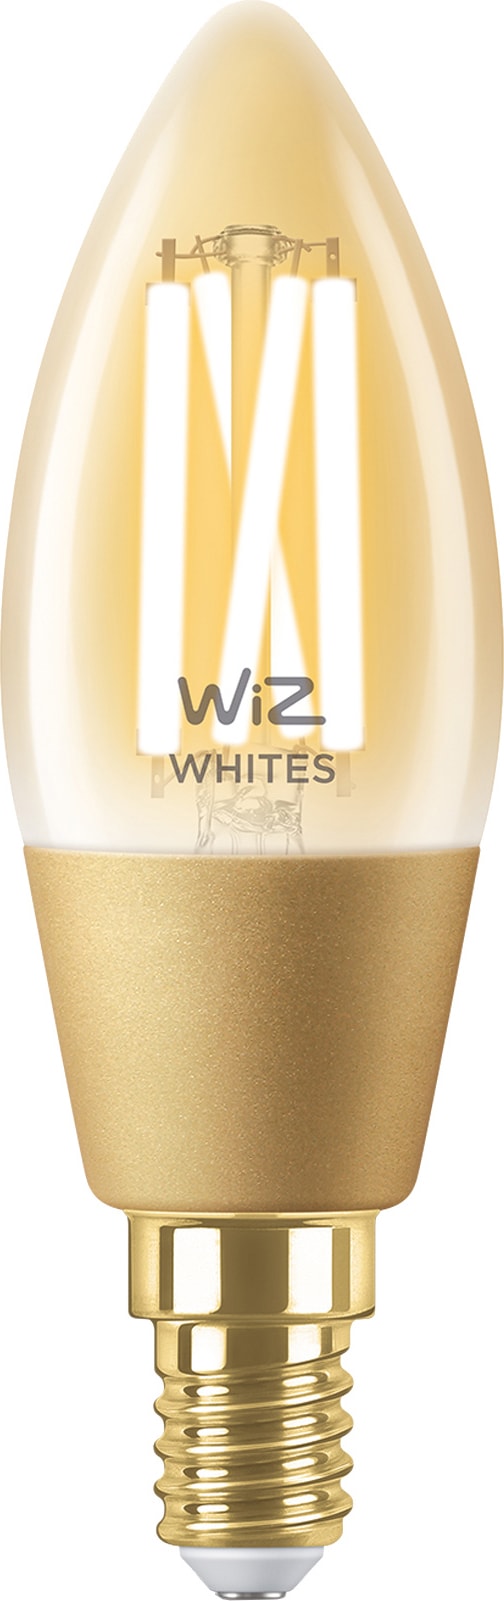 Wiz Light Mignon LED-pære 5W E14 871869978725700 thumbnail